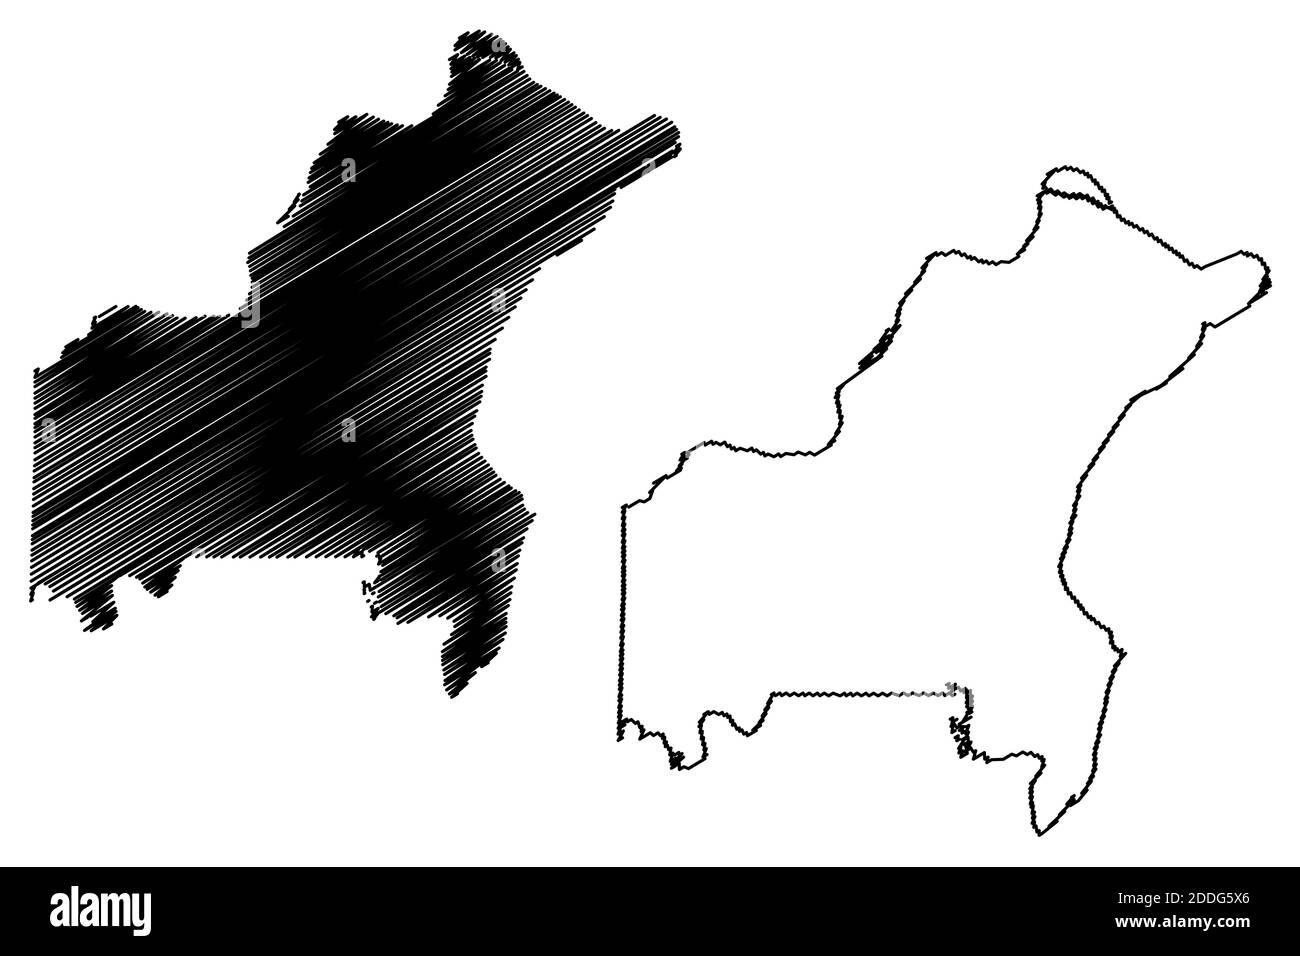 St. Louis County, Missouri (Stati Uniti, Stati Uniti d'America, Stati Uniti, Stati Uniti, Stati Uniti) mappa vettoriale illustrazione, abbozzare schizzo mappa di Saint Louis Illustrazione Vettoriale